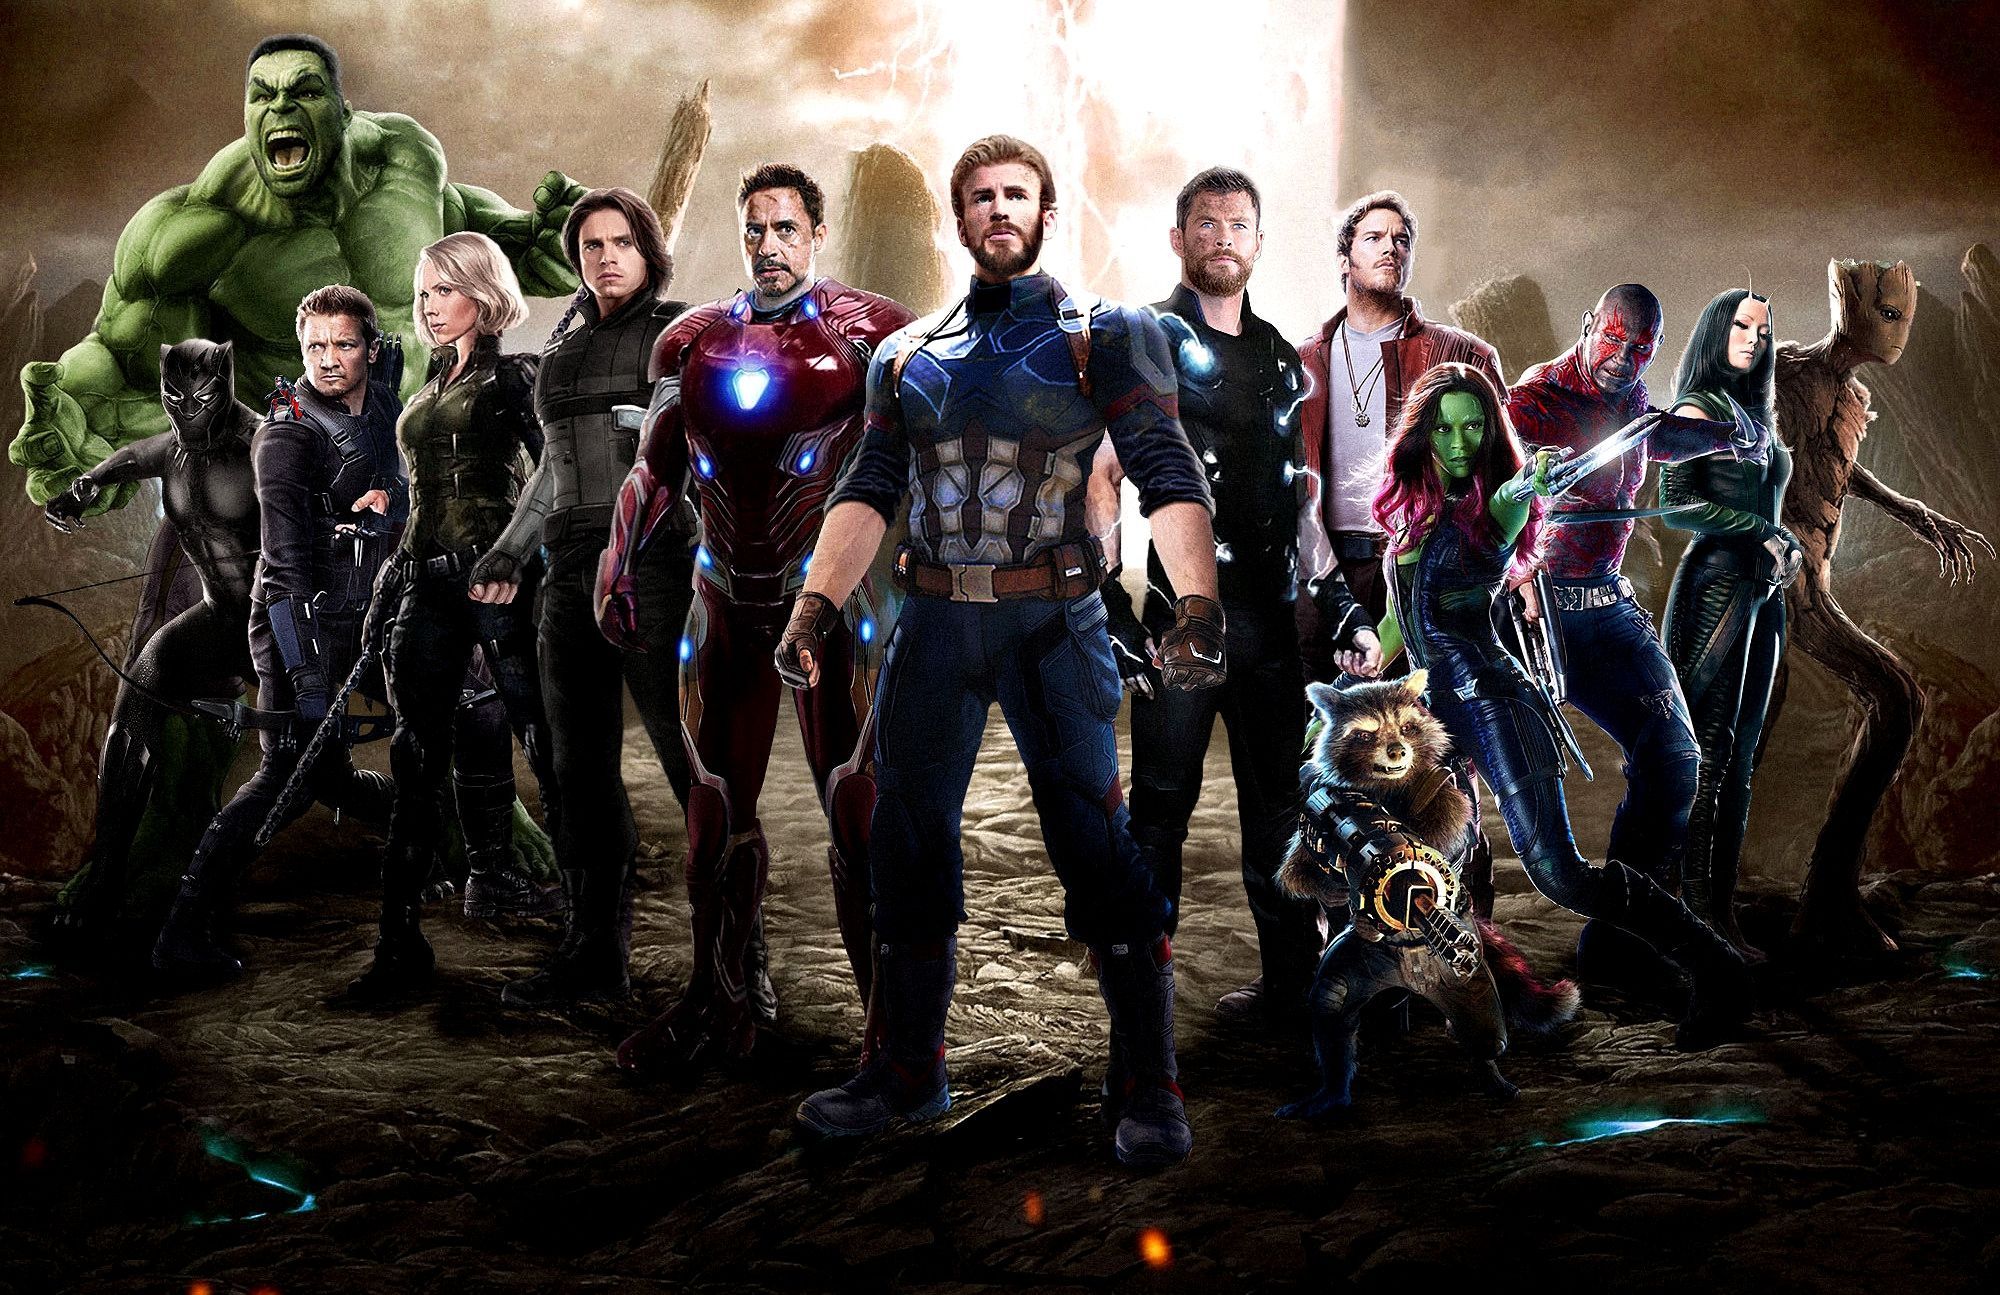 4K Wallpaper For Pc Marvel Gallery 4K. Avengers wallpaper, Avengers movies, Avengers